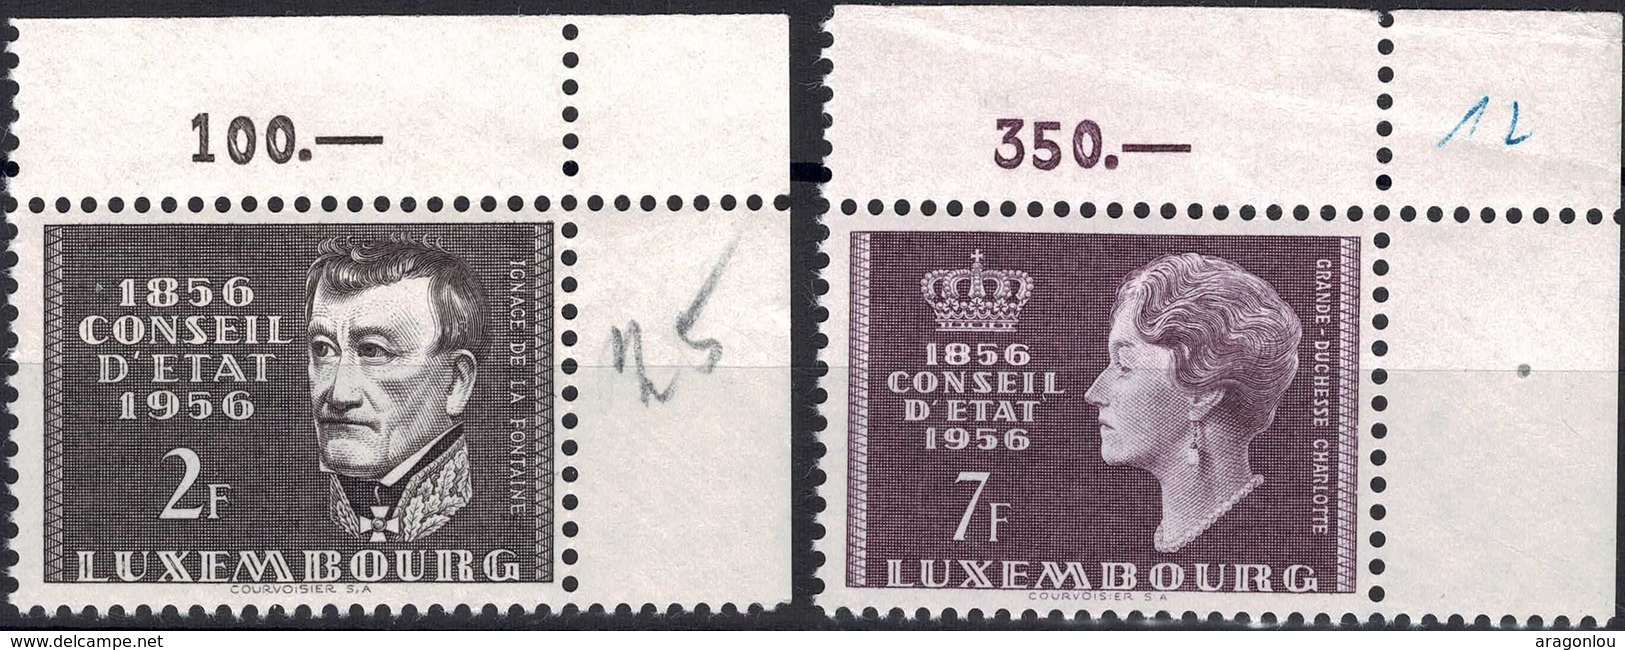 1956 Série Centenaire Du Conseil D'Etat, Neuf,  Michel 2019: 559-560, 2F&7F. Valeur Catalogue: 5,50€ - Neufs